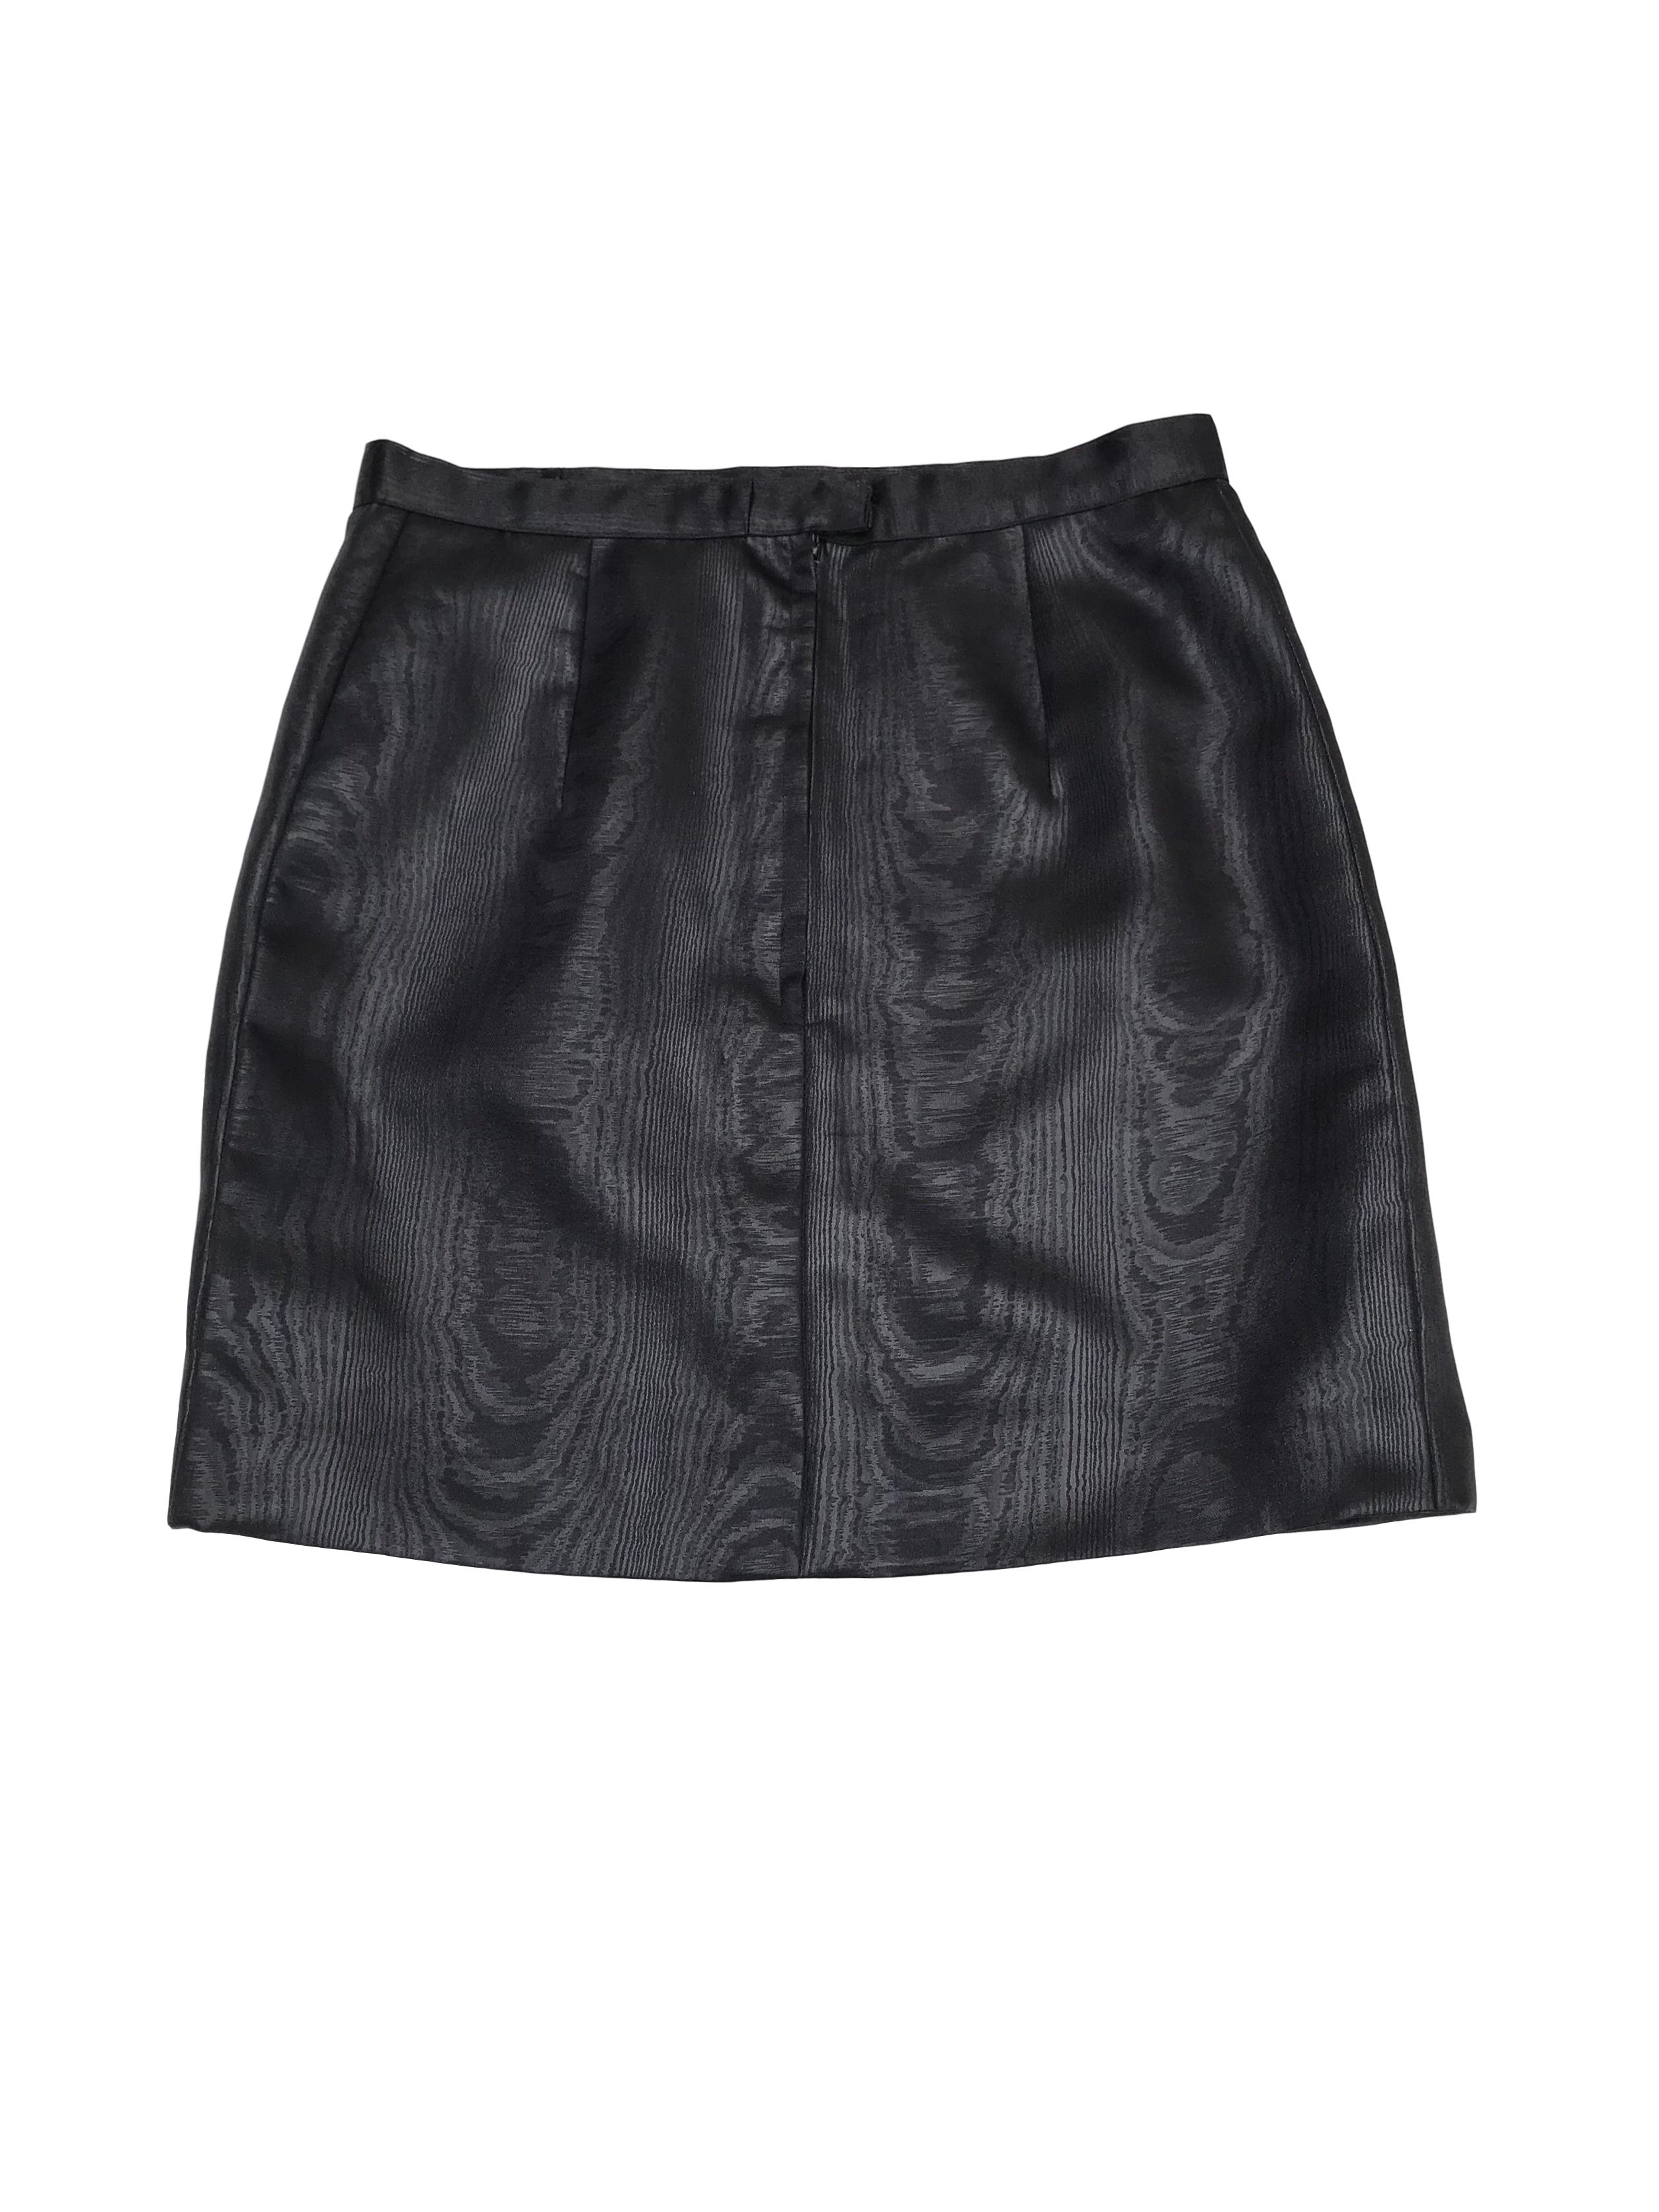 Falda negra de tela satinada efecto madera, con cierre y botón posterior. Largo 44cm